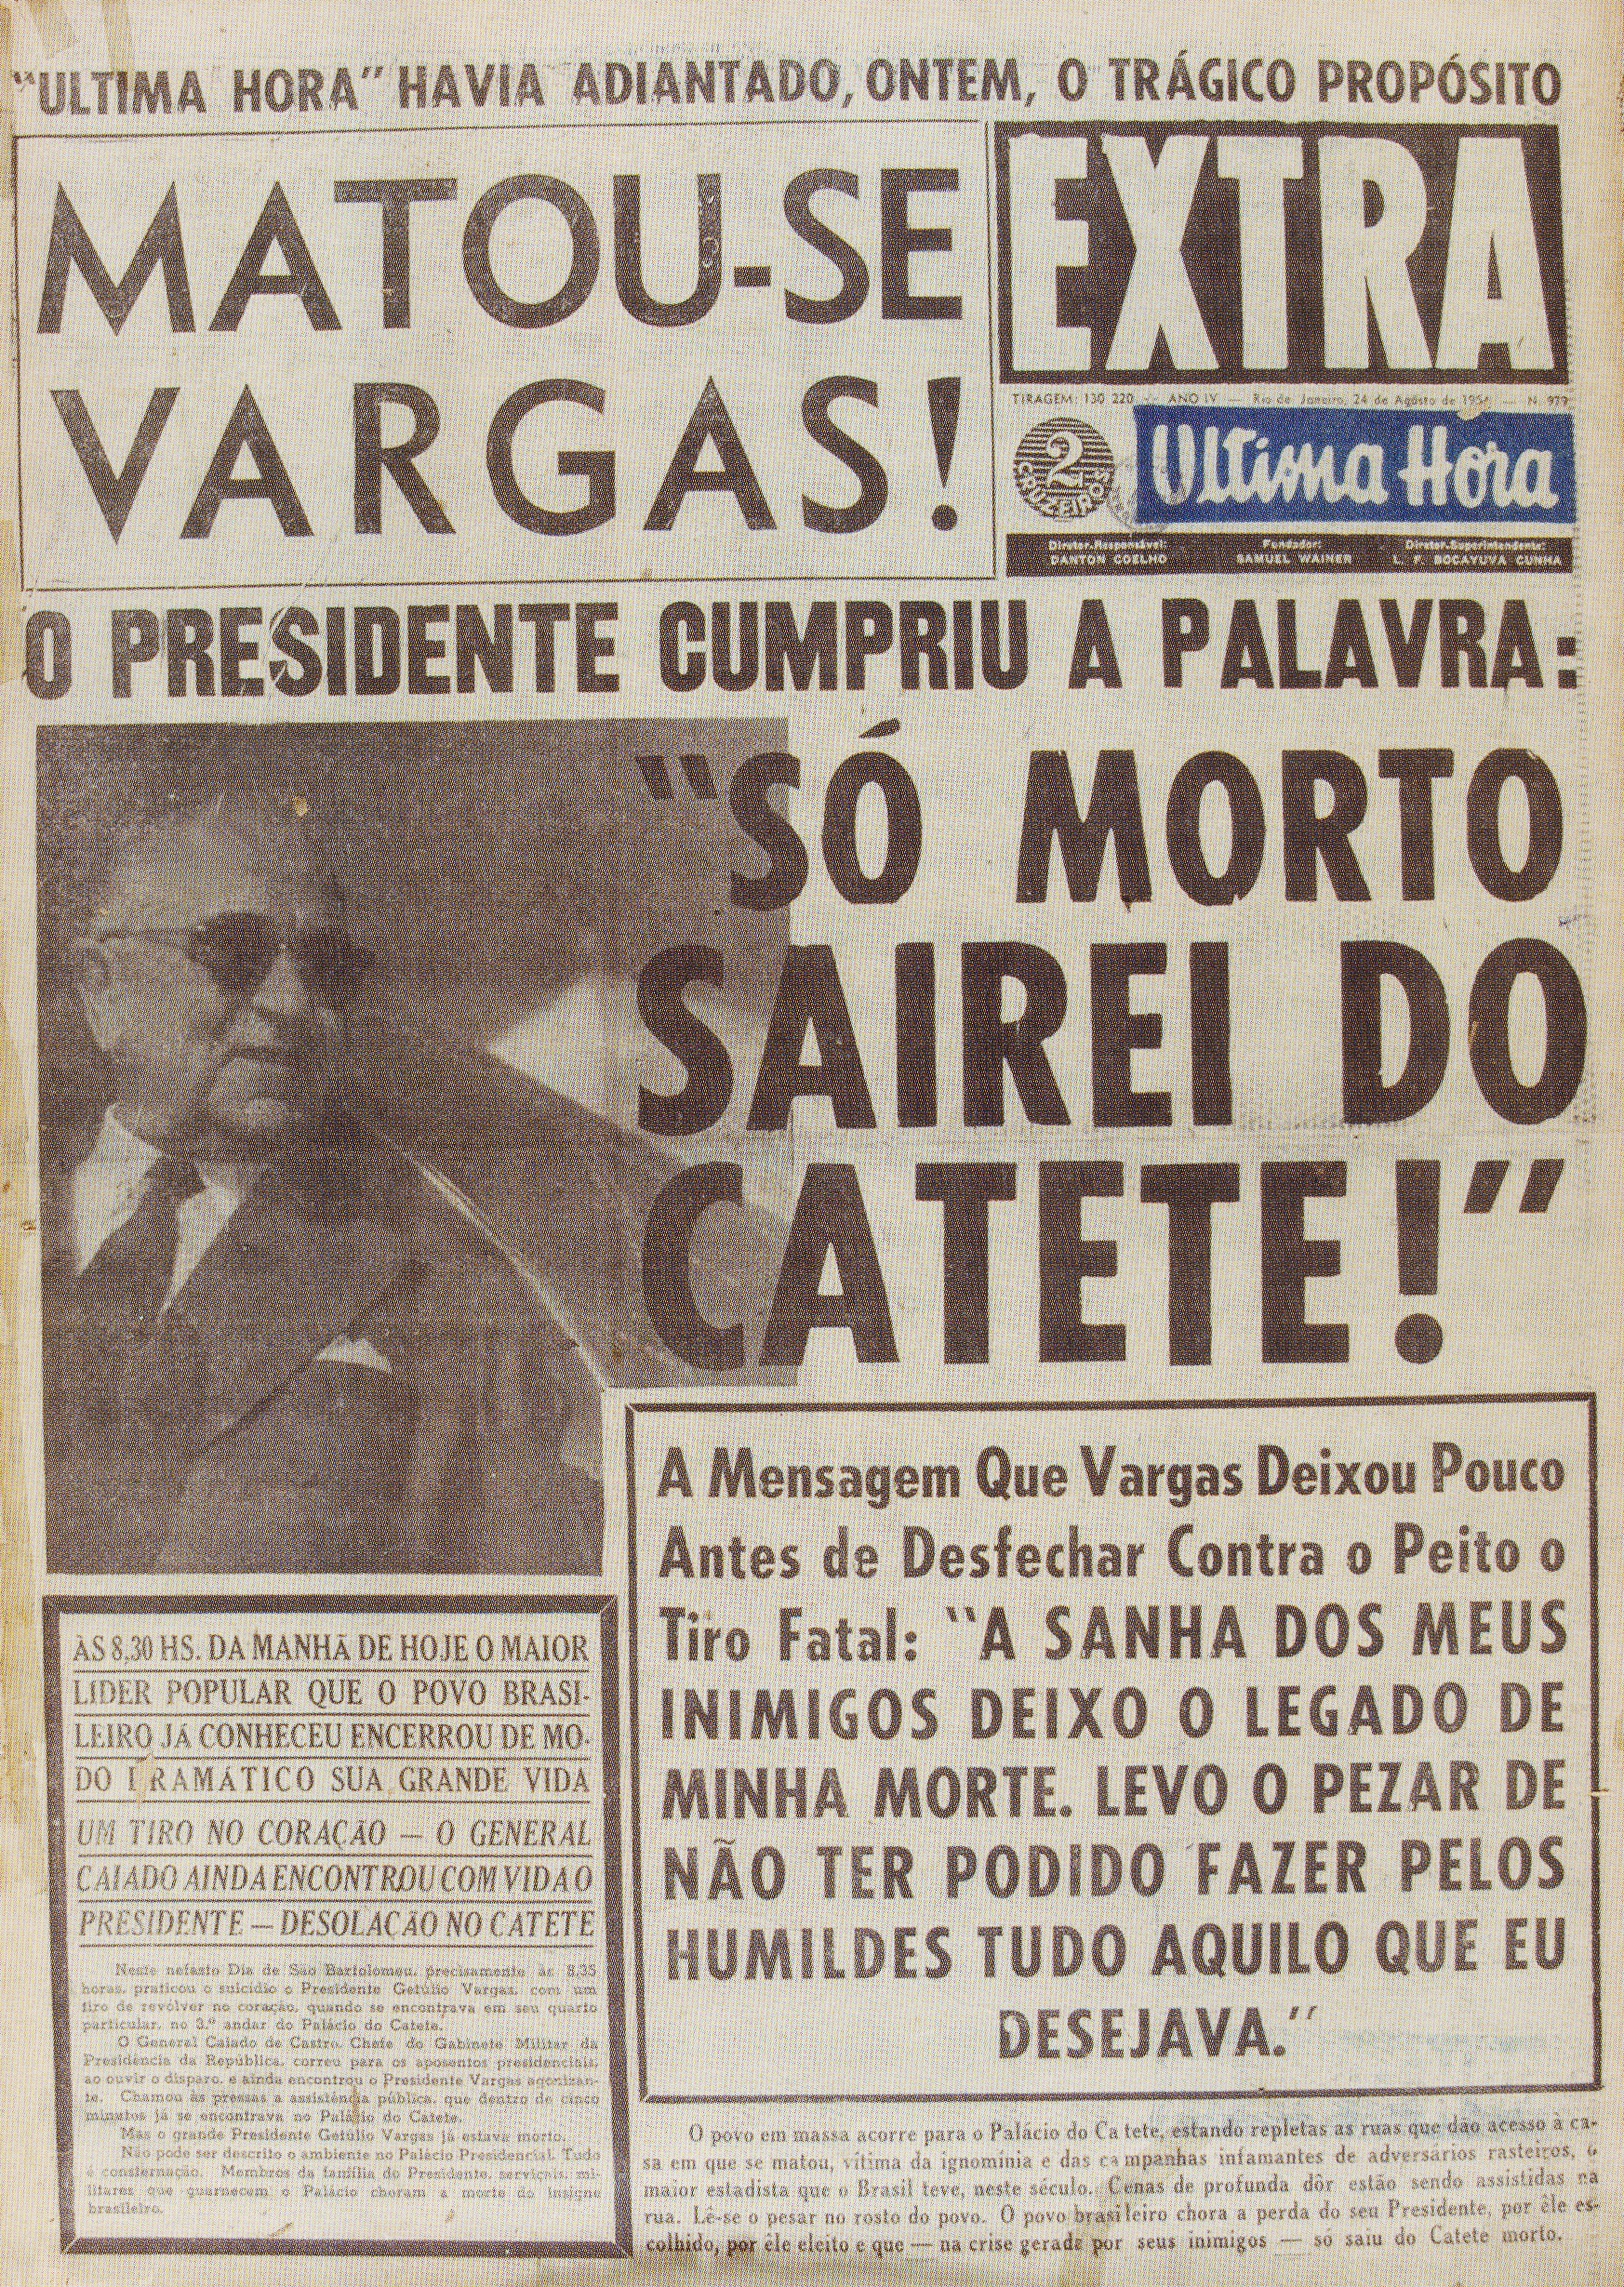 Suicídio de Getúlio Vargas no Palácio do Catete